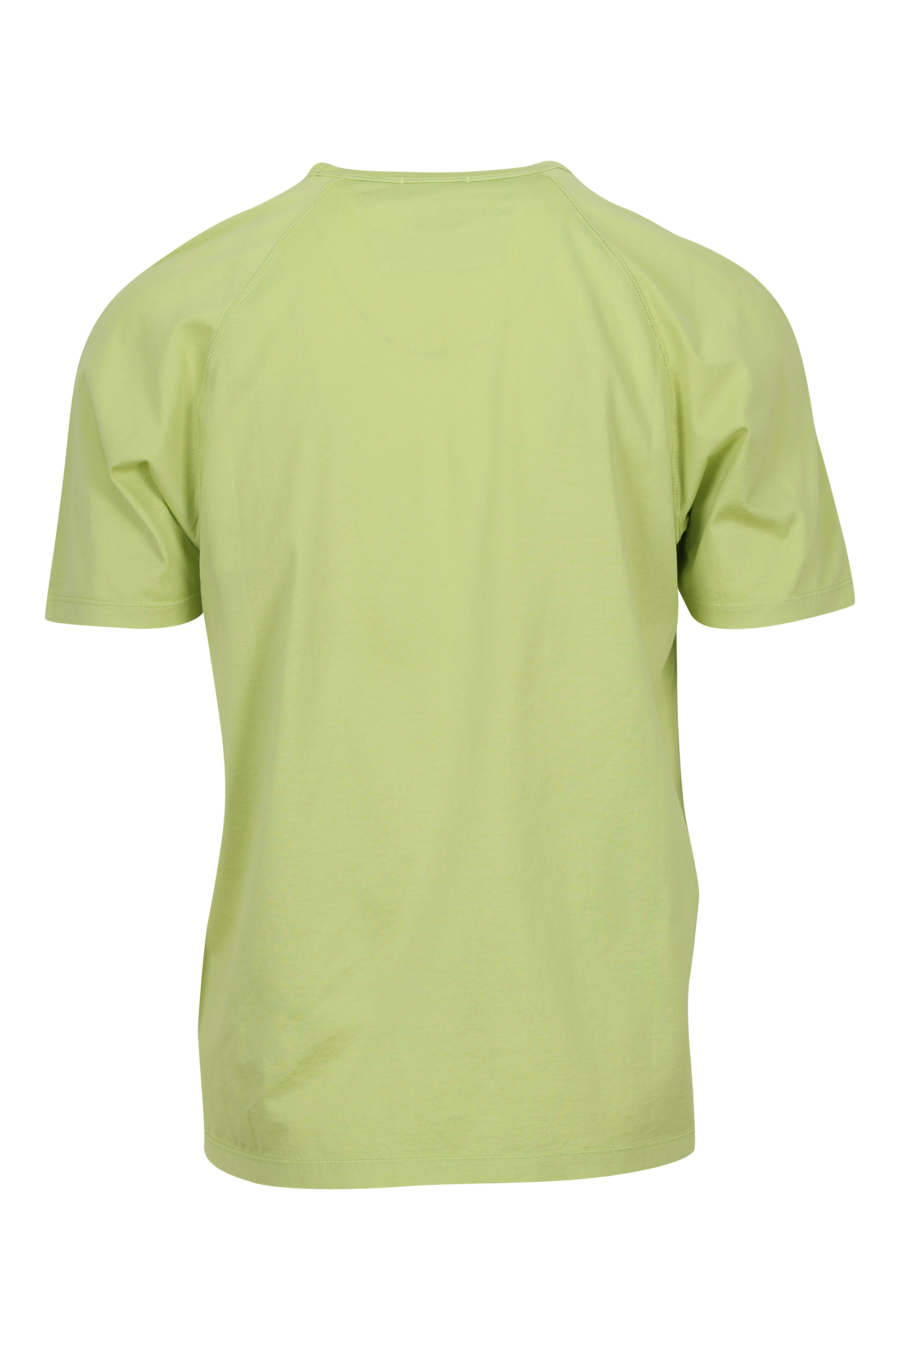 Camiseta verde claro con minilogo "cp" centrado - 7620943760507 1